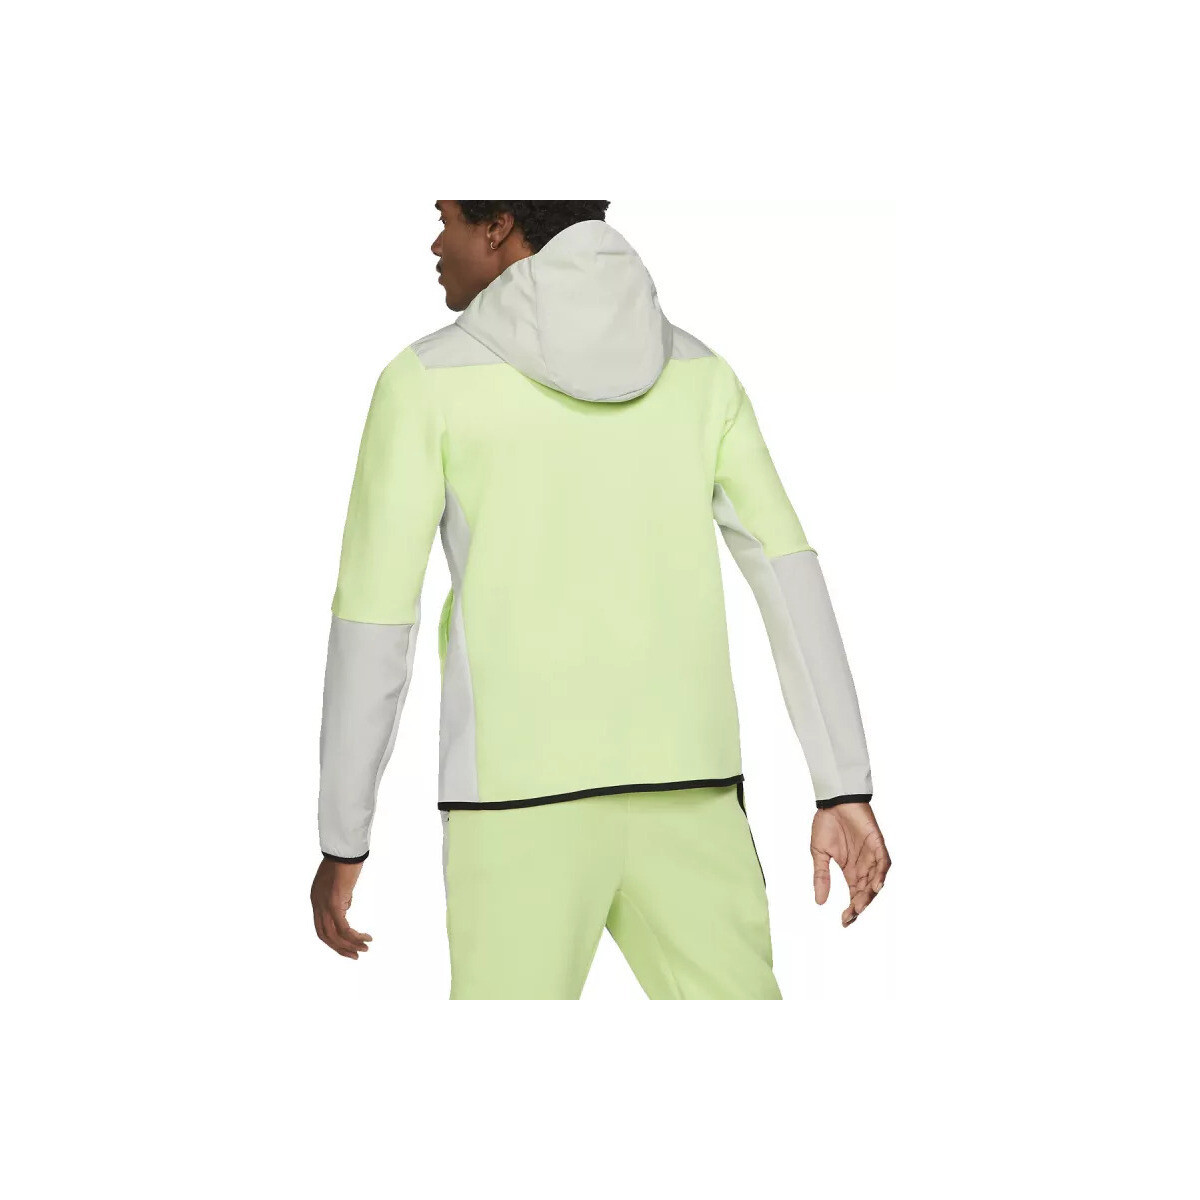 Nike Vert Sportswear Tech Fleece Z3dh92xJ